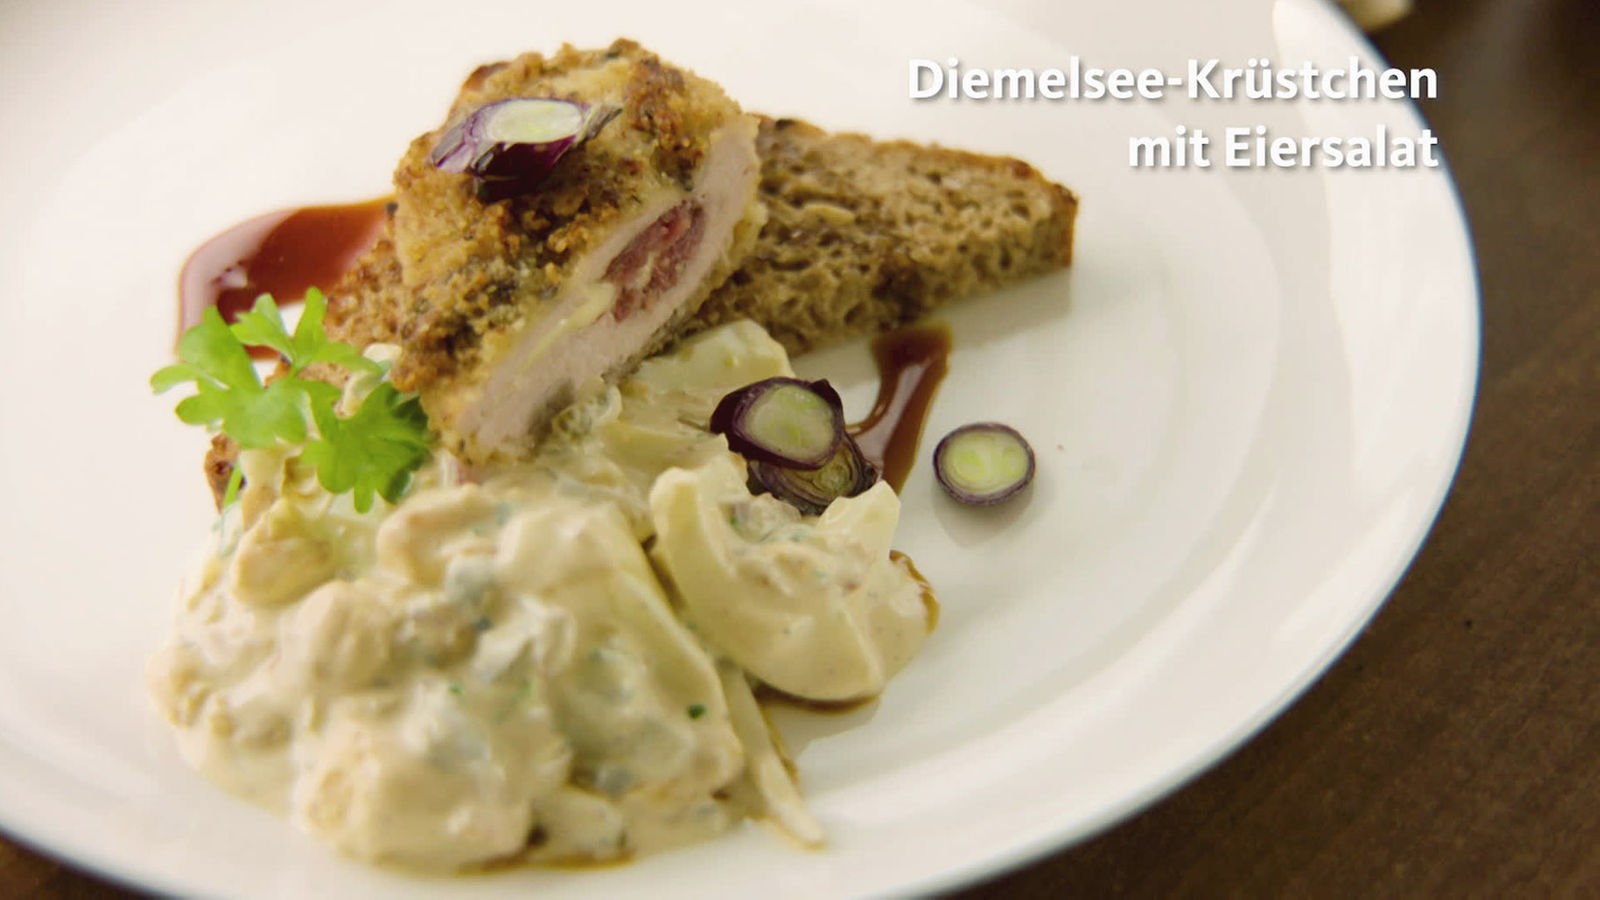 Diemelsee-Krüstchen mit Eiersalat - Rezepte - Verbraucher - WDR